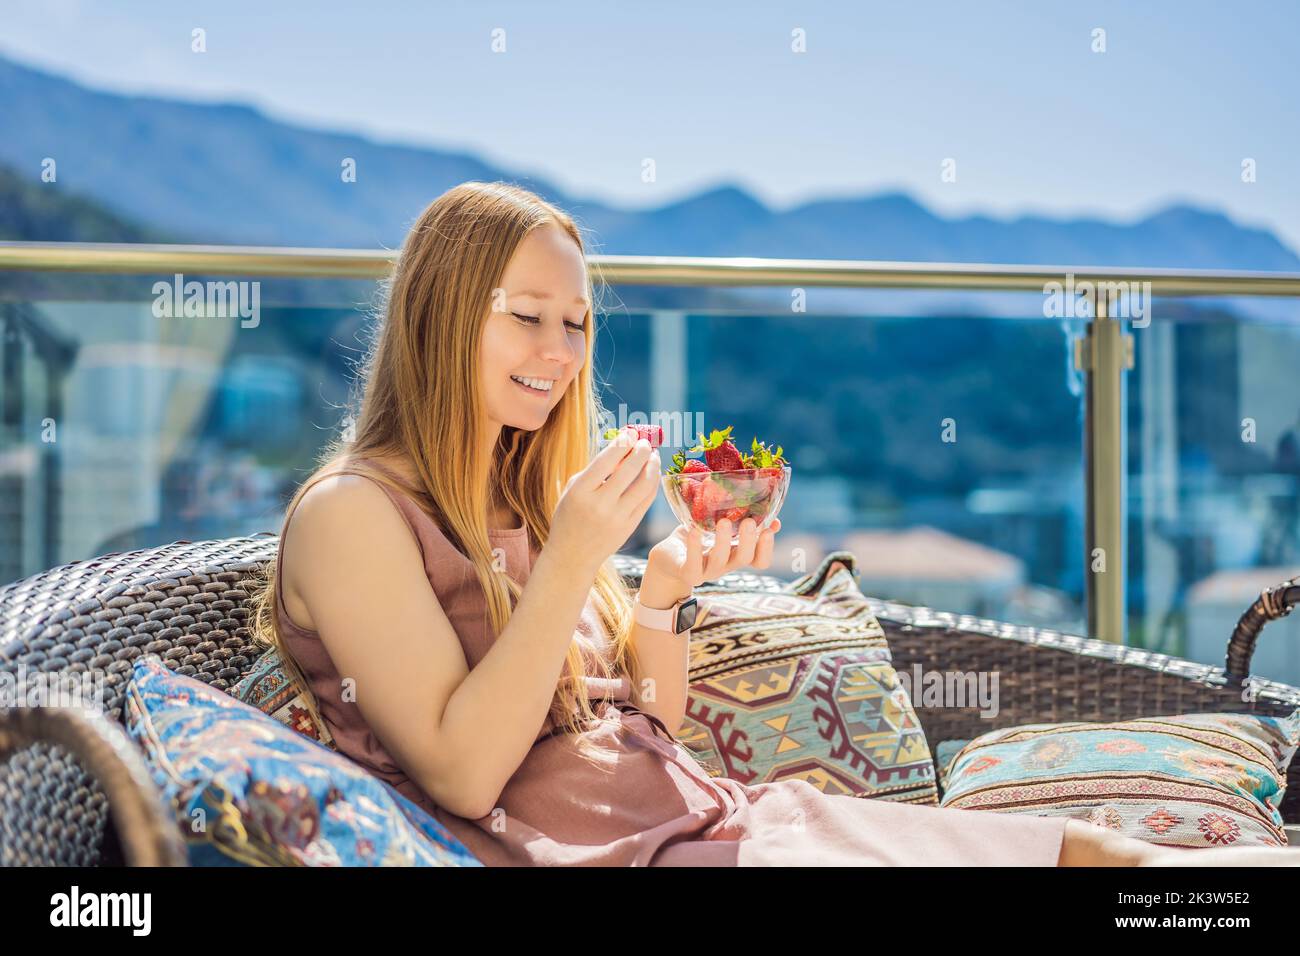 Portrait d'une femme magnifique portant une belle robe assise dans un patio et mangeant de la fraise Banque D'Images